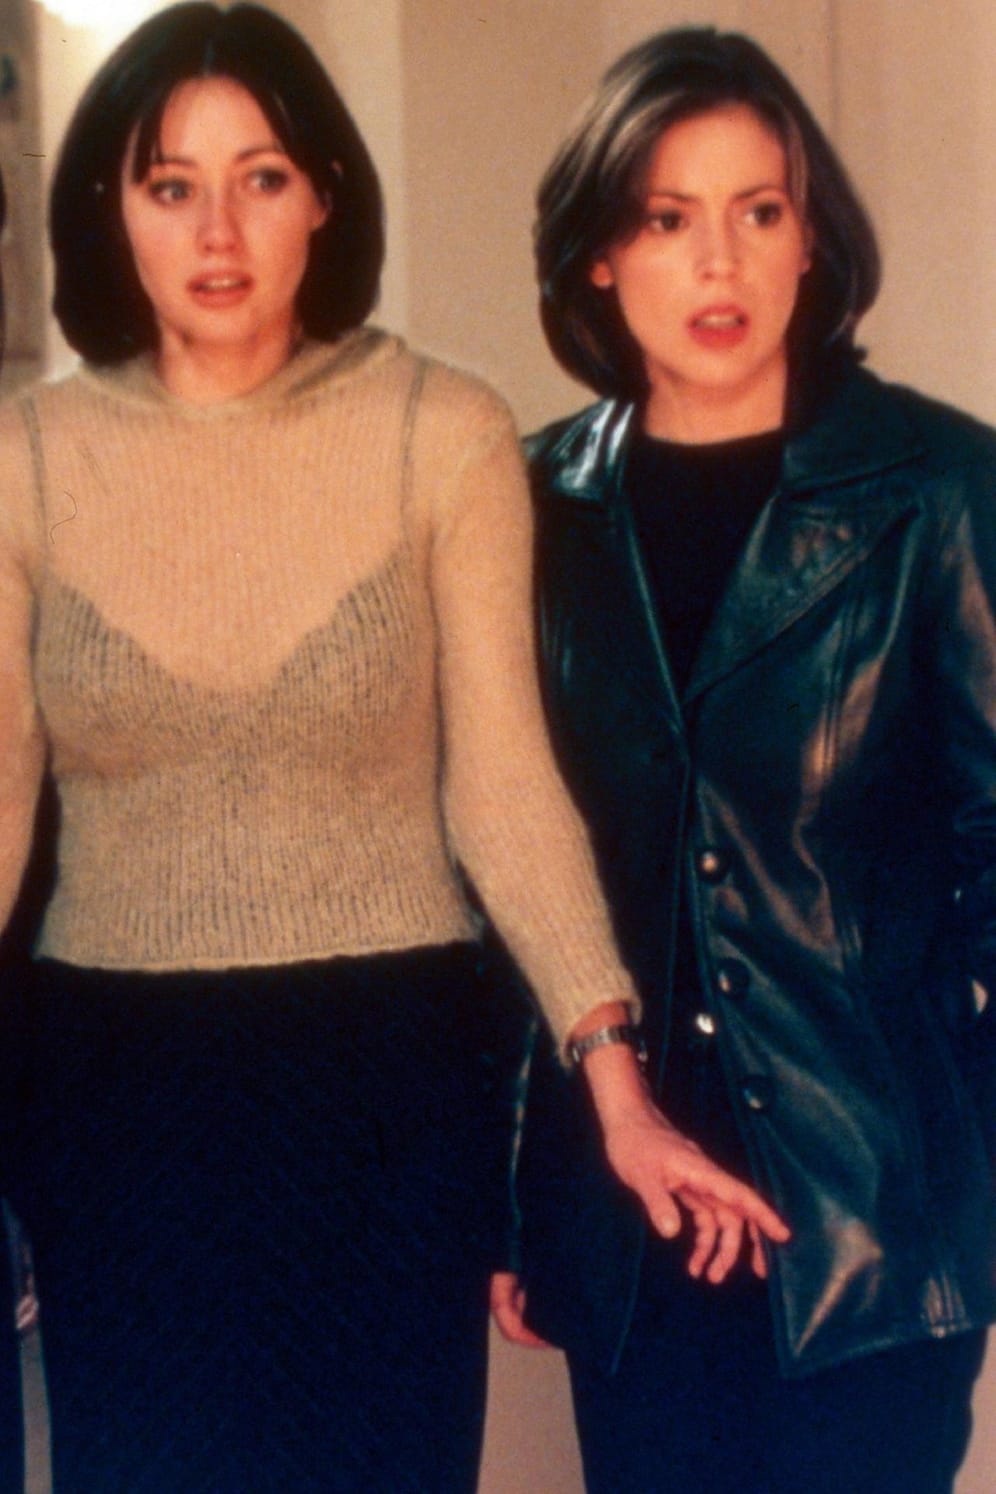 Alyssa Milano und Shannen Doherty: In "Charmed" spielten sie Schwestern mit Zauberkräften, die gemeinsam gegen das Böse kämpfen. Hinter den Kulissen waren sich die beiden gar nicht grün. Immer wieder gab es Zoff, bis die Macher schließlich die Notbremse zogen und Shannen Doherty aus dem Drehbuch schrieben.